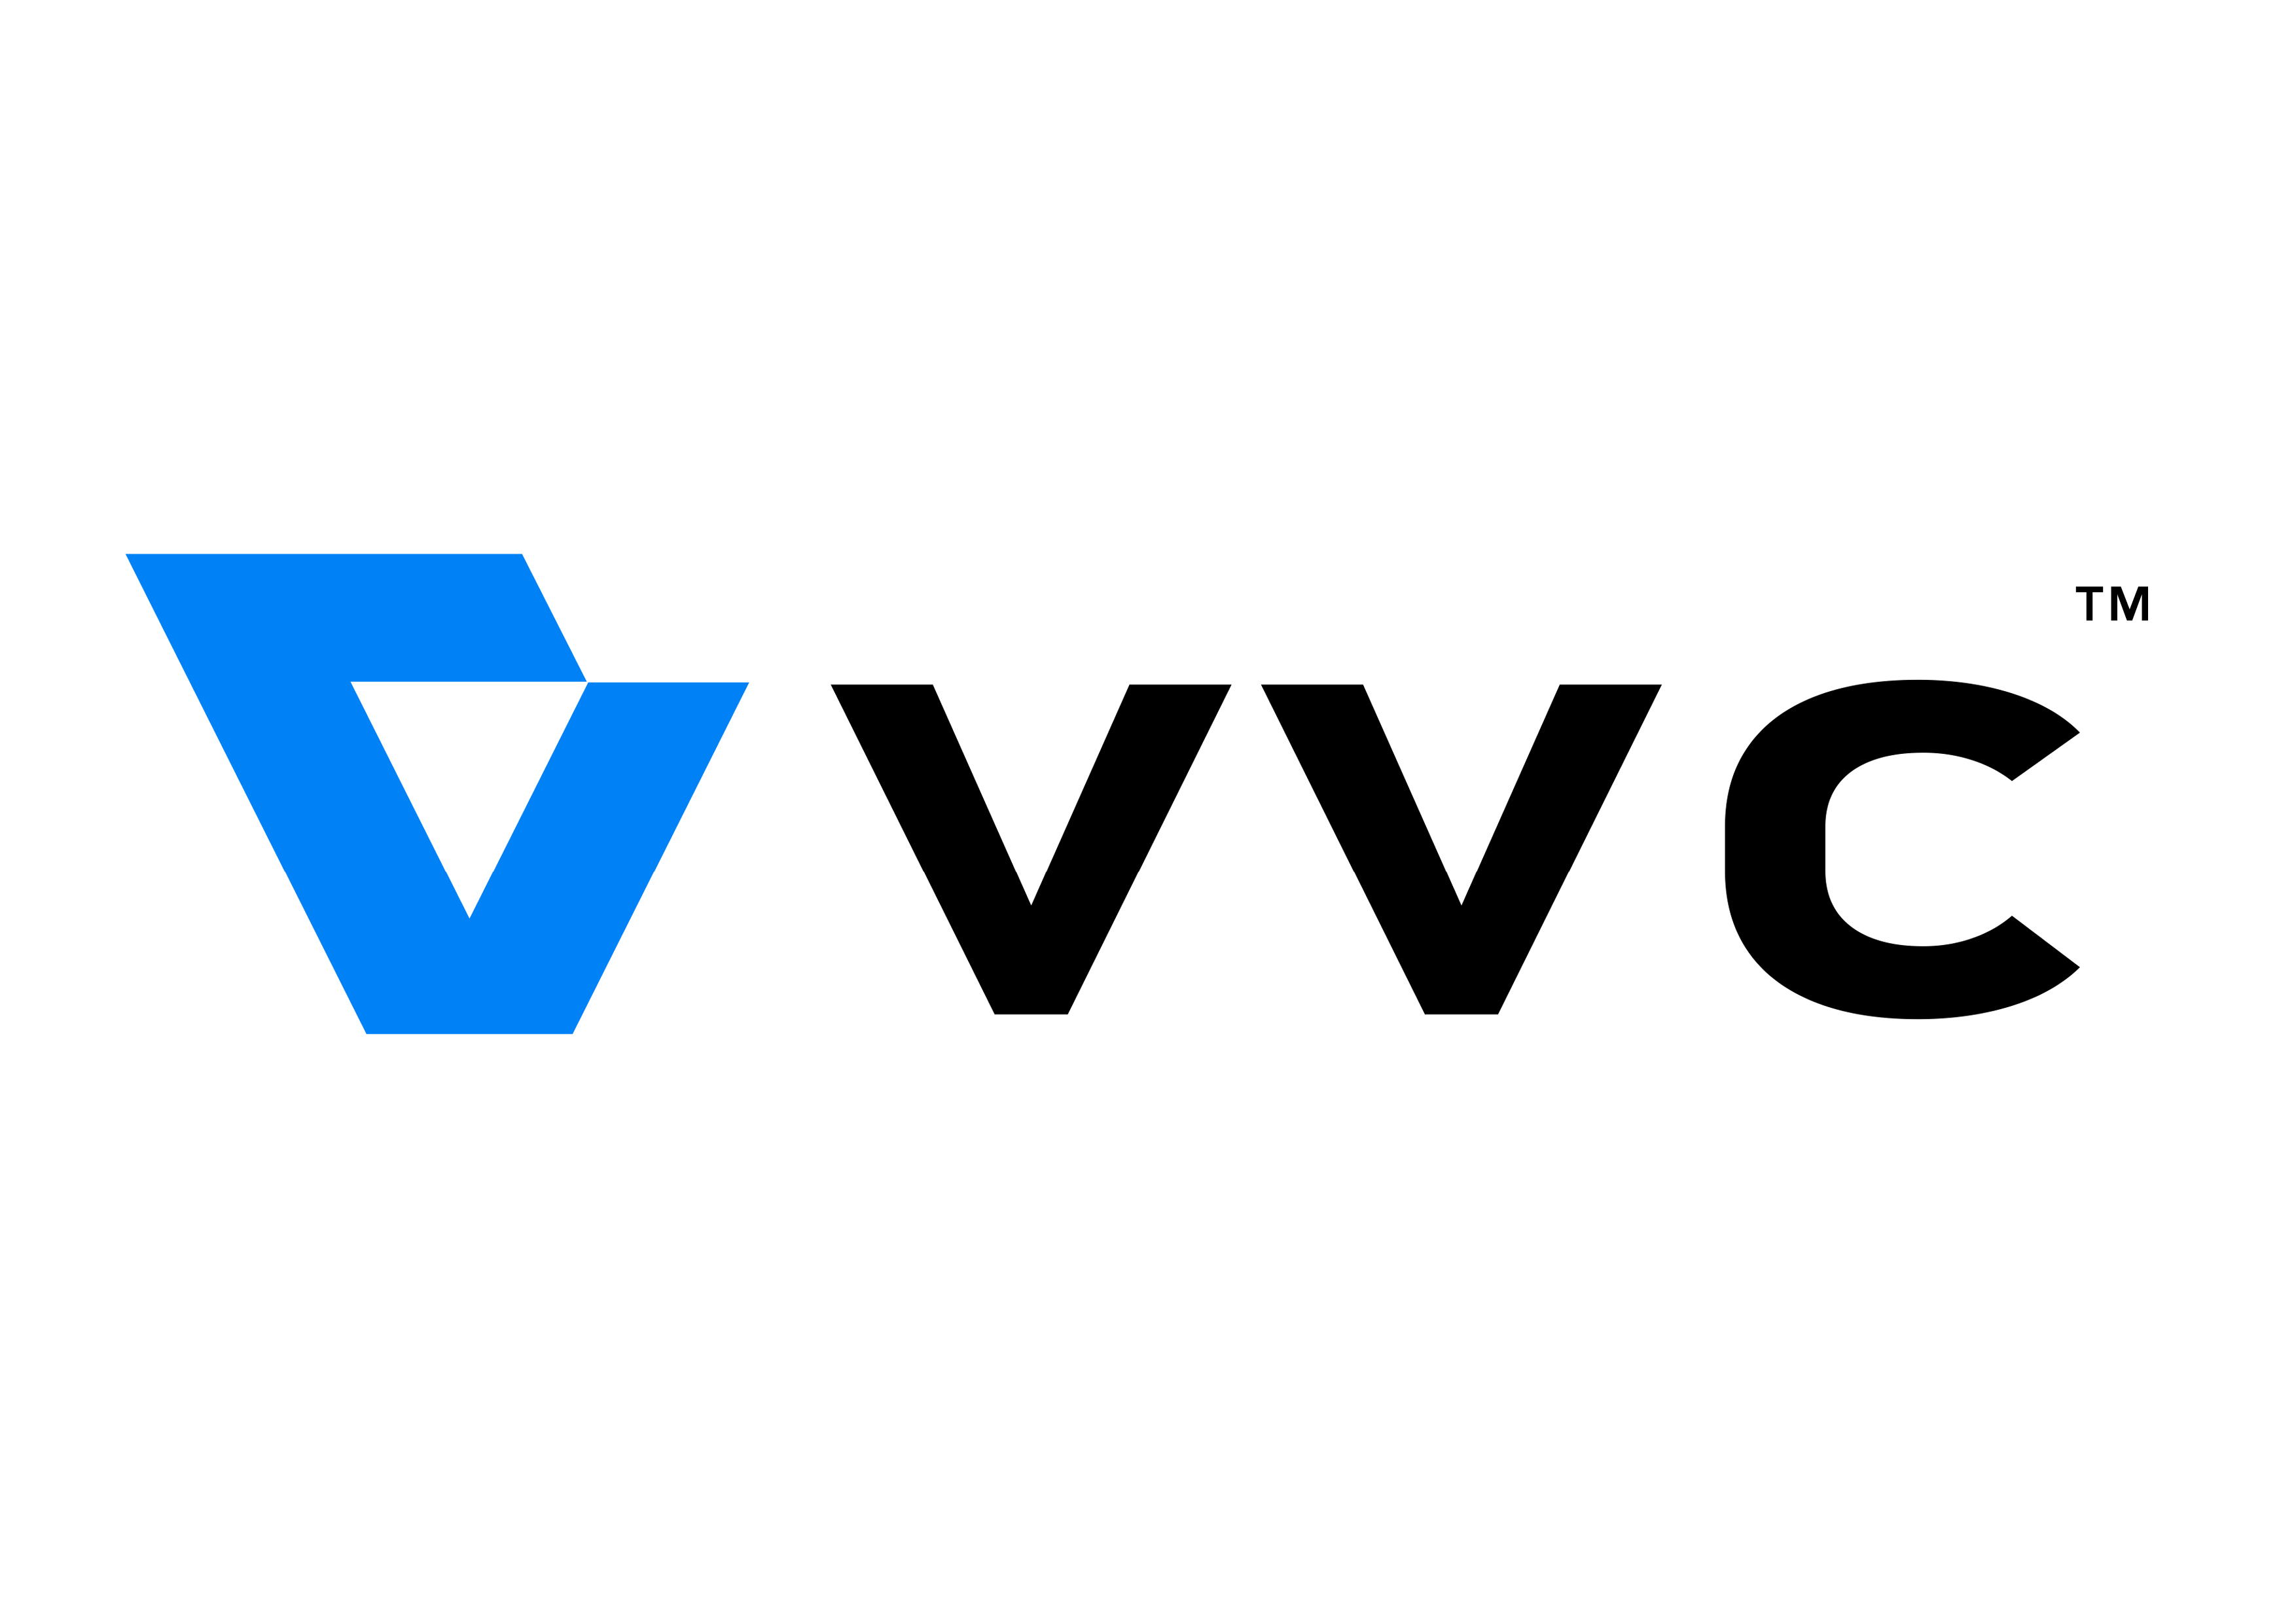 下一代视频编码标准H.266/VVC(Versatile Video Coding)